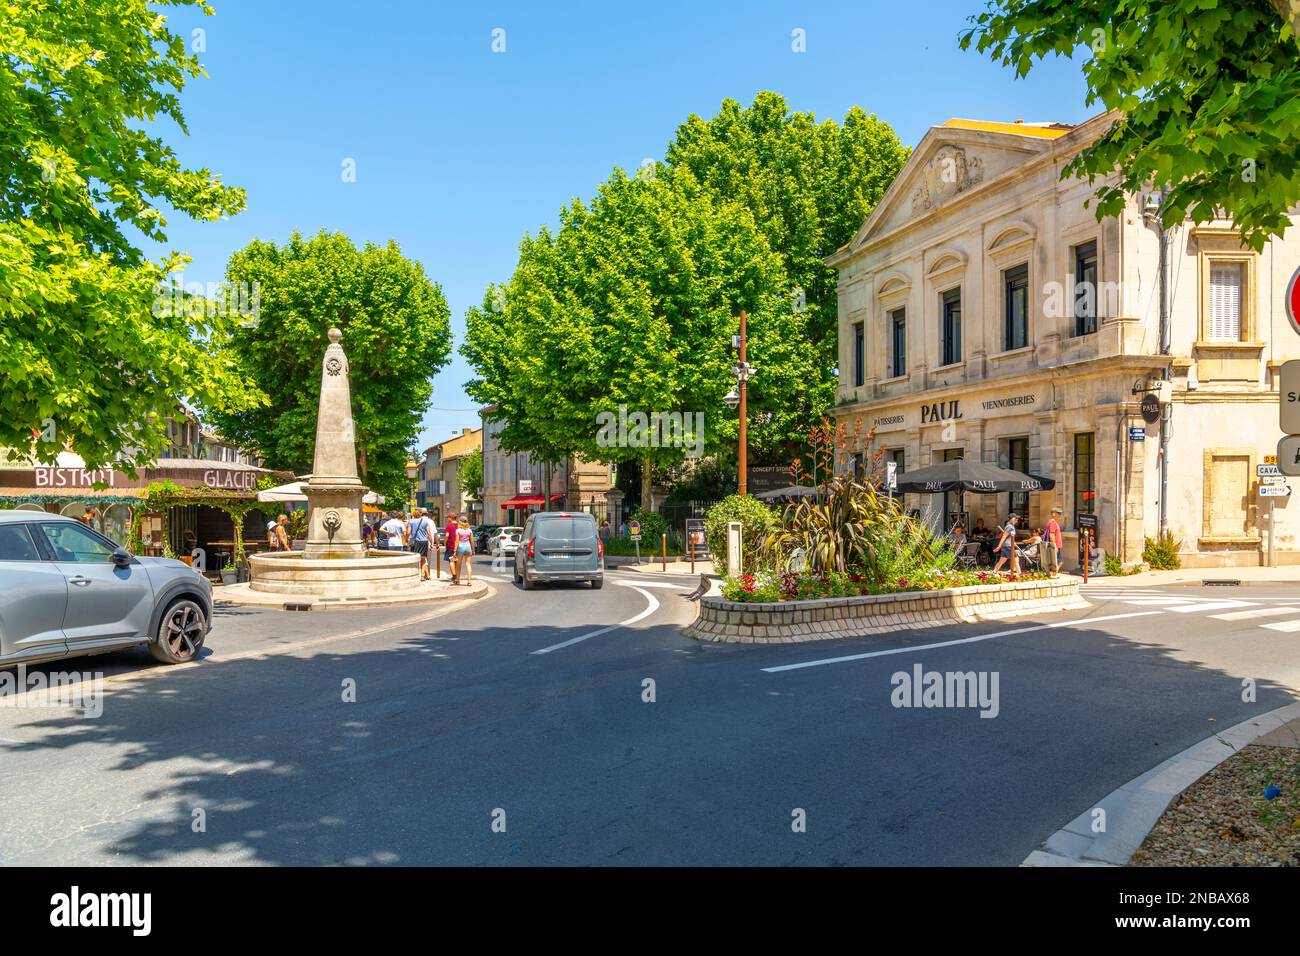 Une fontaine à obélisque dans la vieille ville médiévale de la ville idyllique de Saint-Rémy-de-Provence, dans la région Provence Côte d'Azur du Sud de la France. Banque D'Images